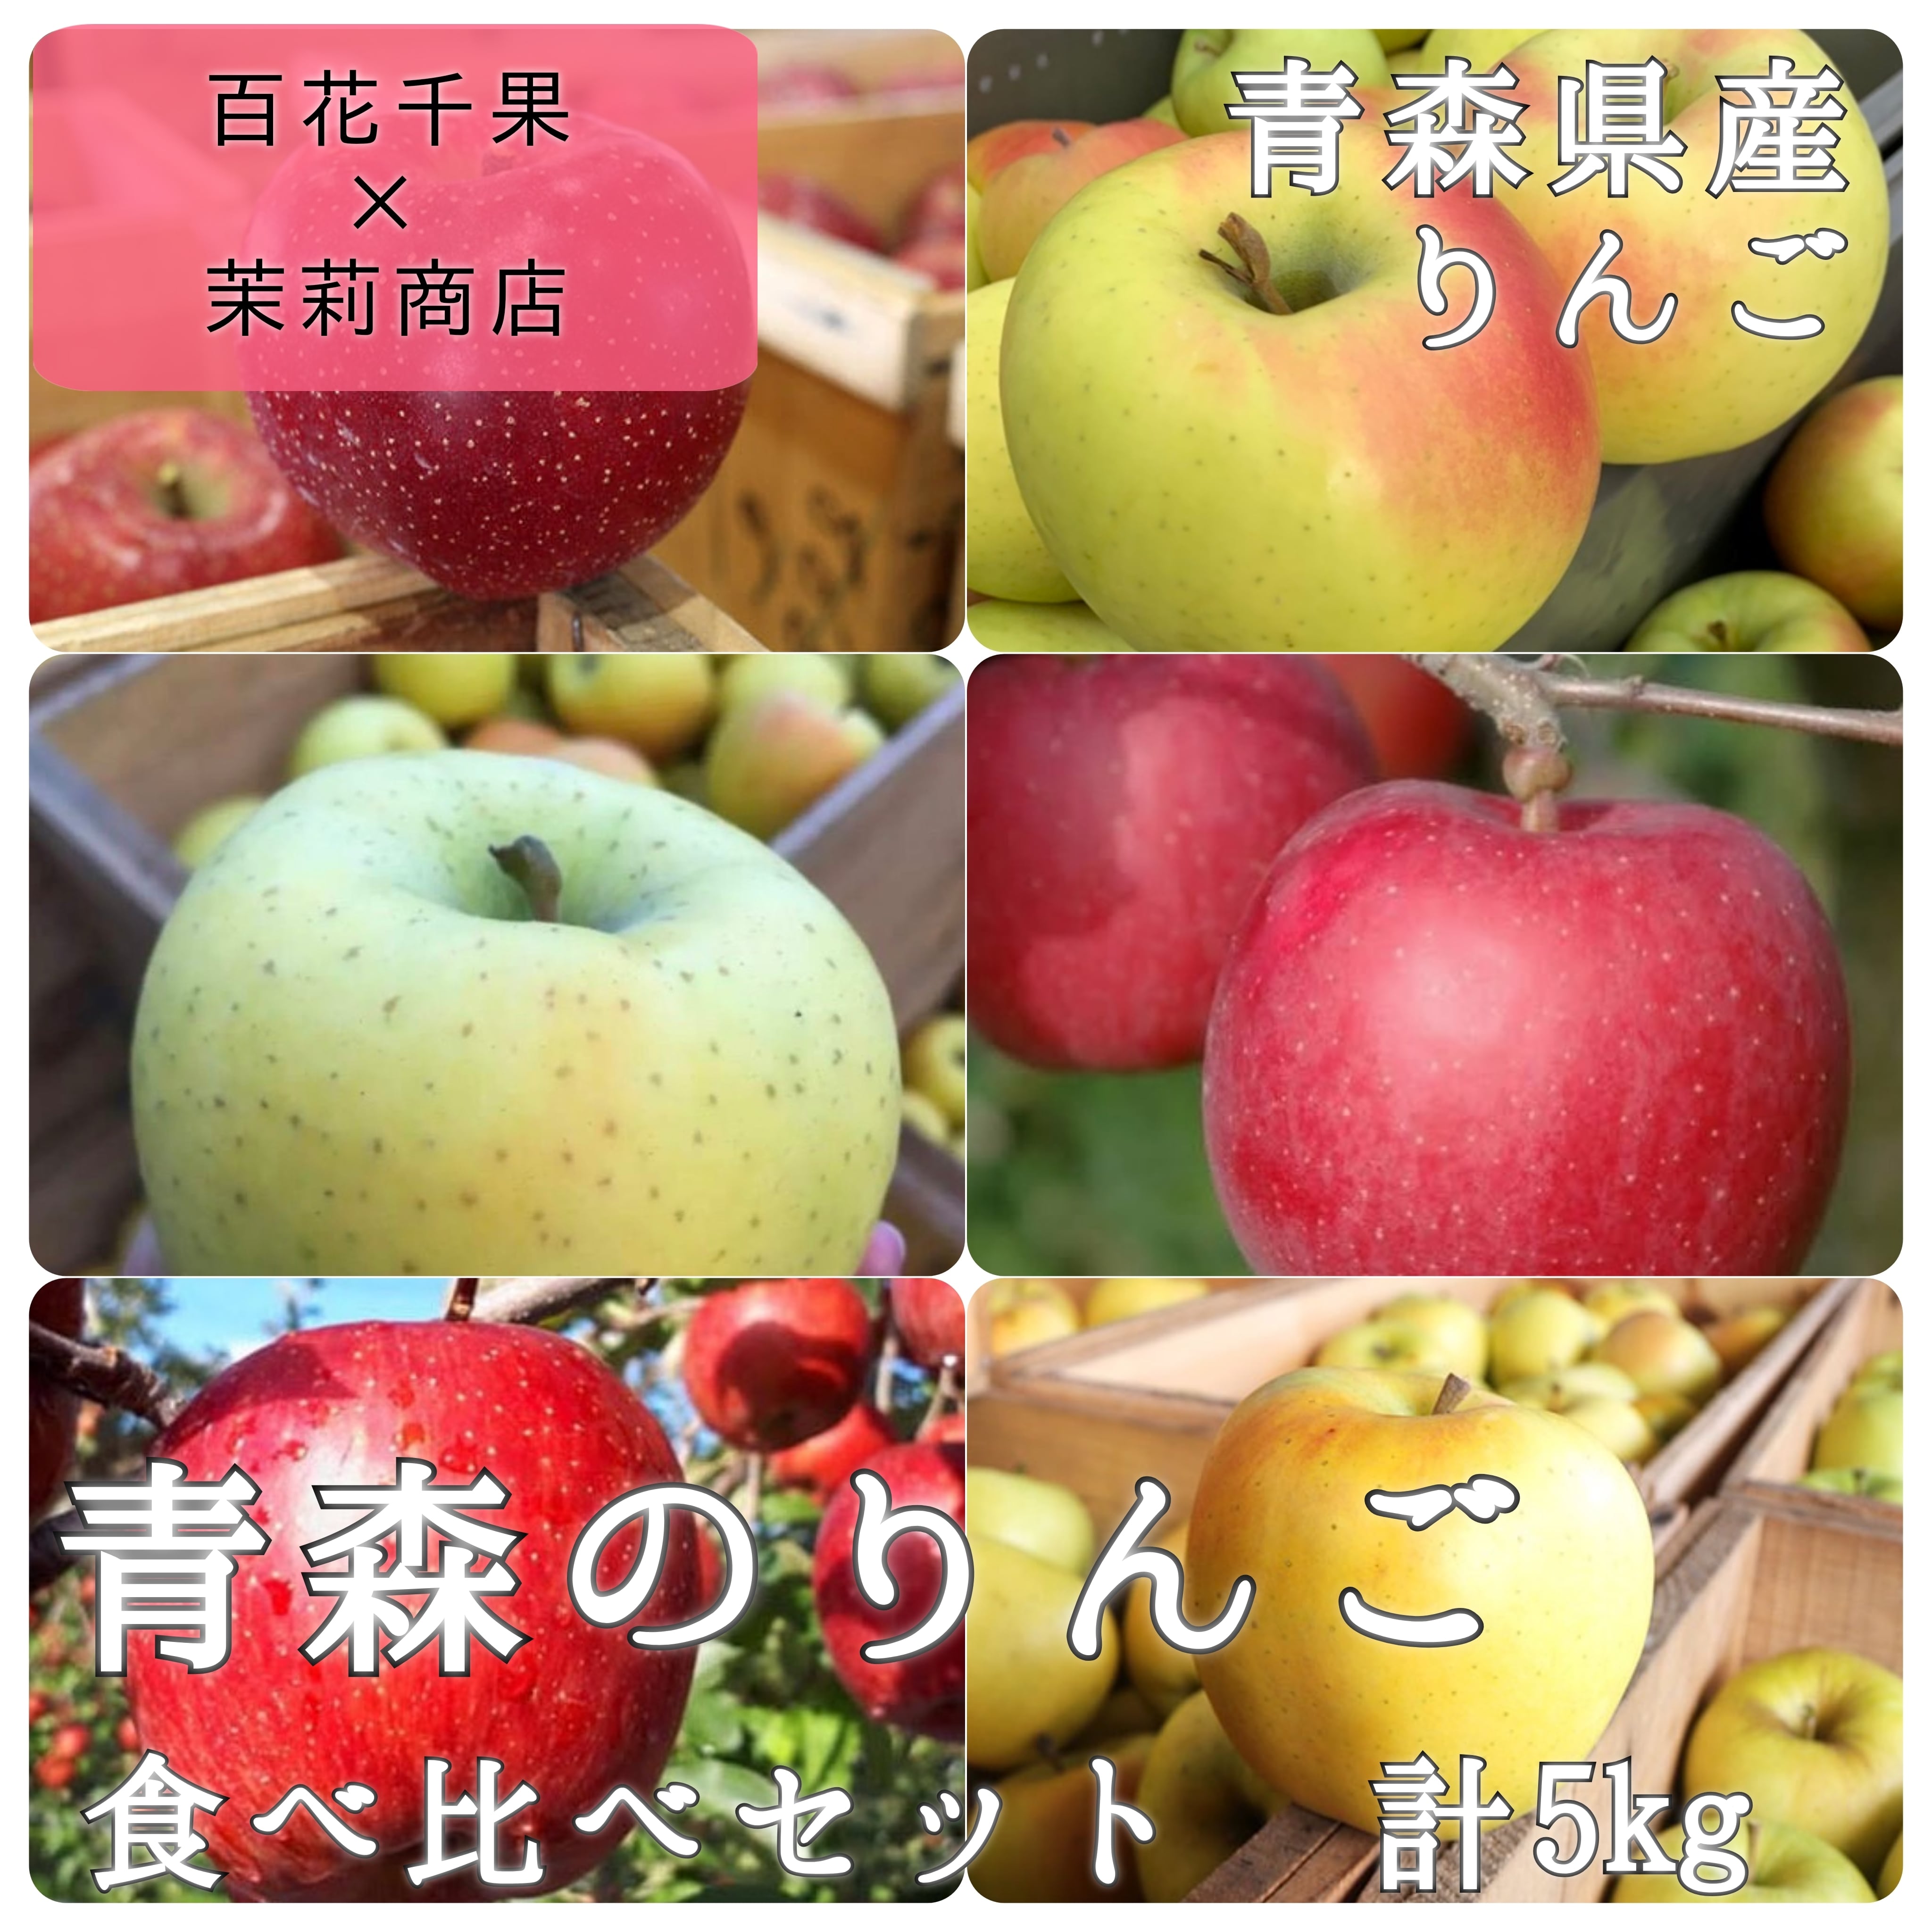 ★期間限定★青森県産 ふじ りんご 大玉入 家庭用 6~8玉